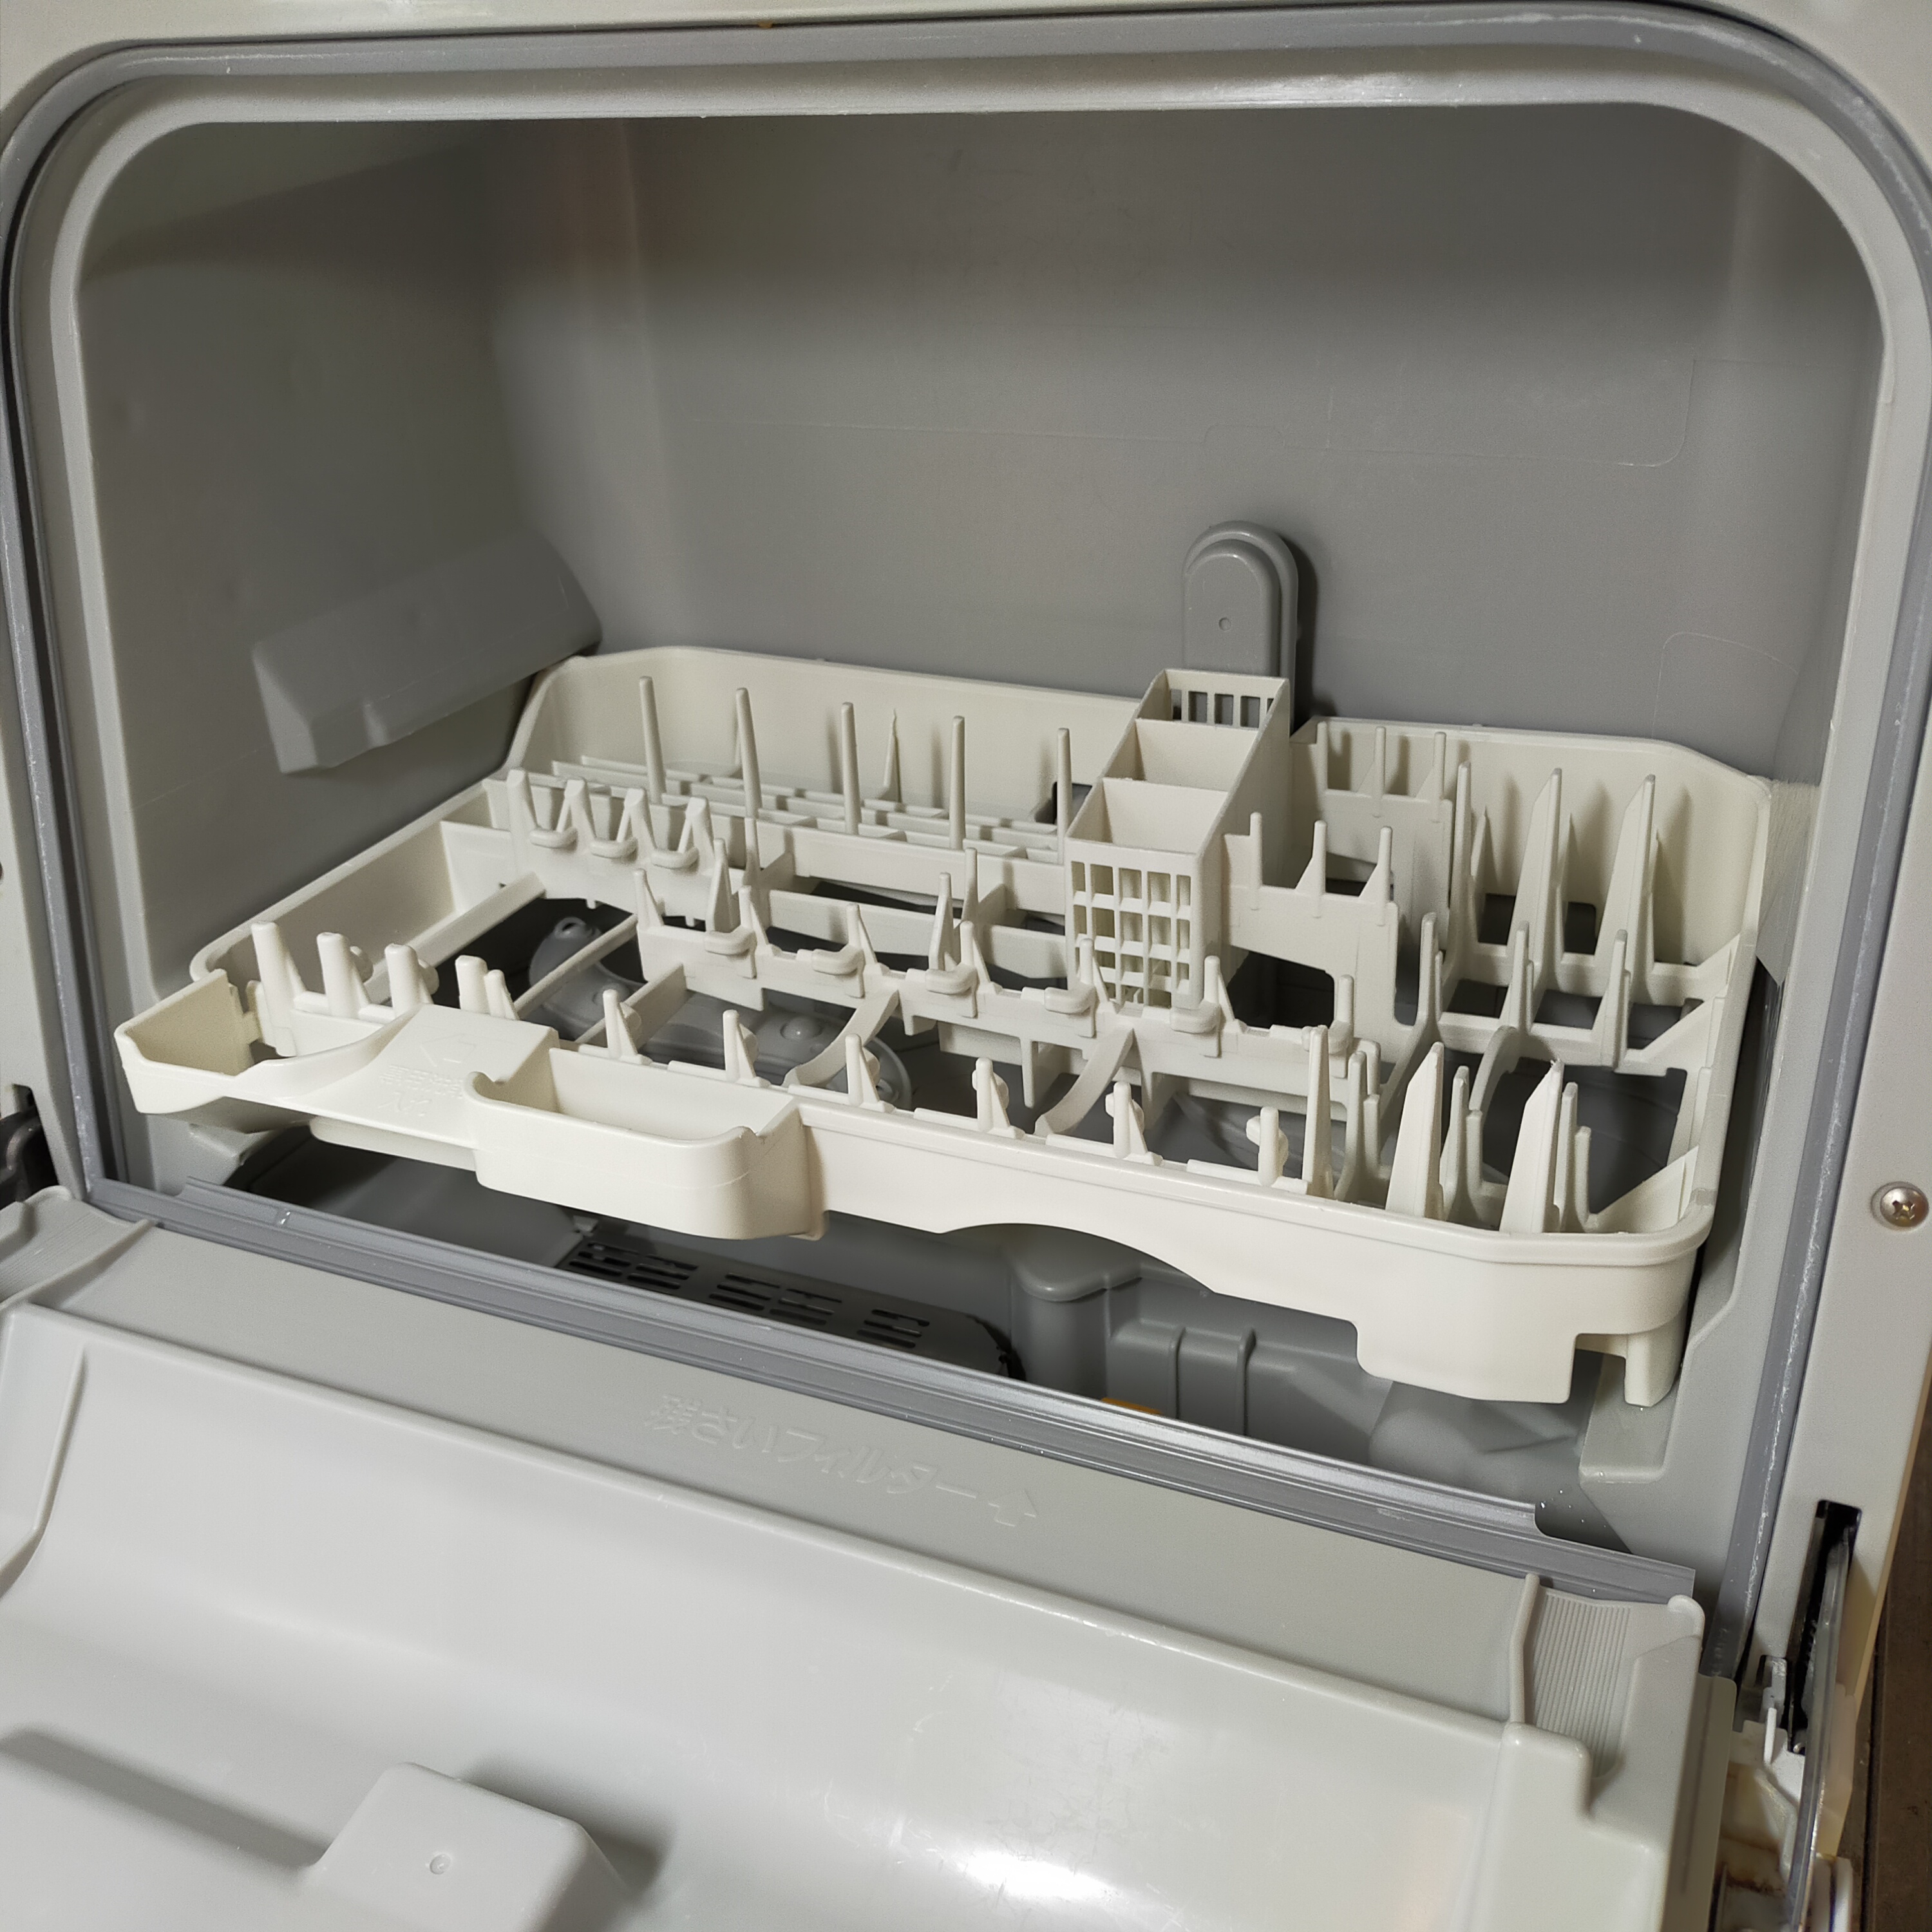 Panasonic(パナソニック) 食器洗い乾燥機 NP-TCR3-W(ホワイト)を使ったCHISa0さんのクチコミ画像2